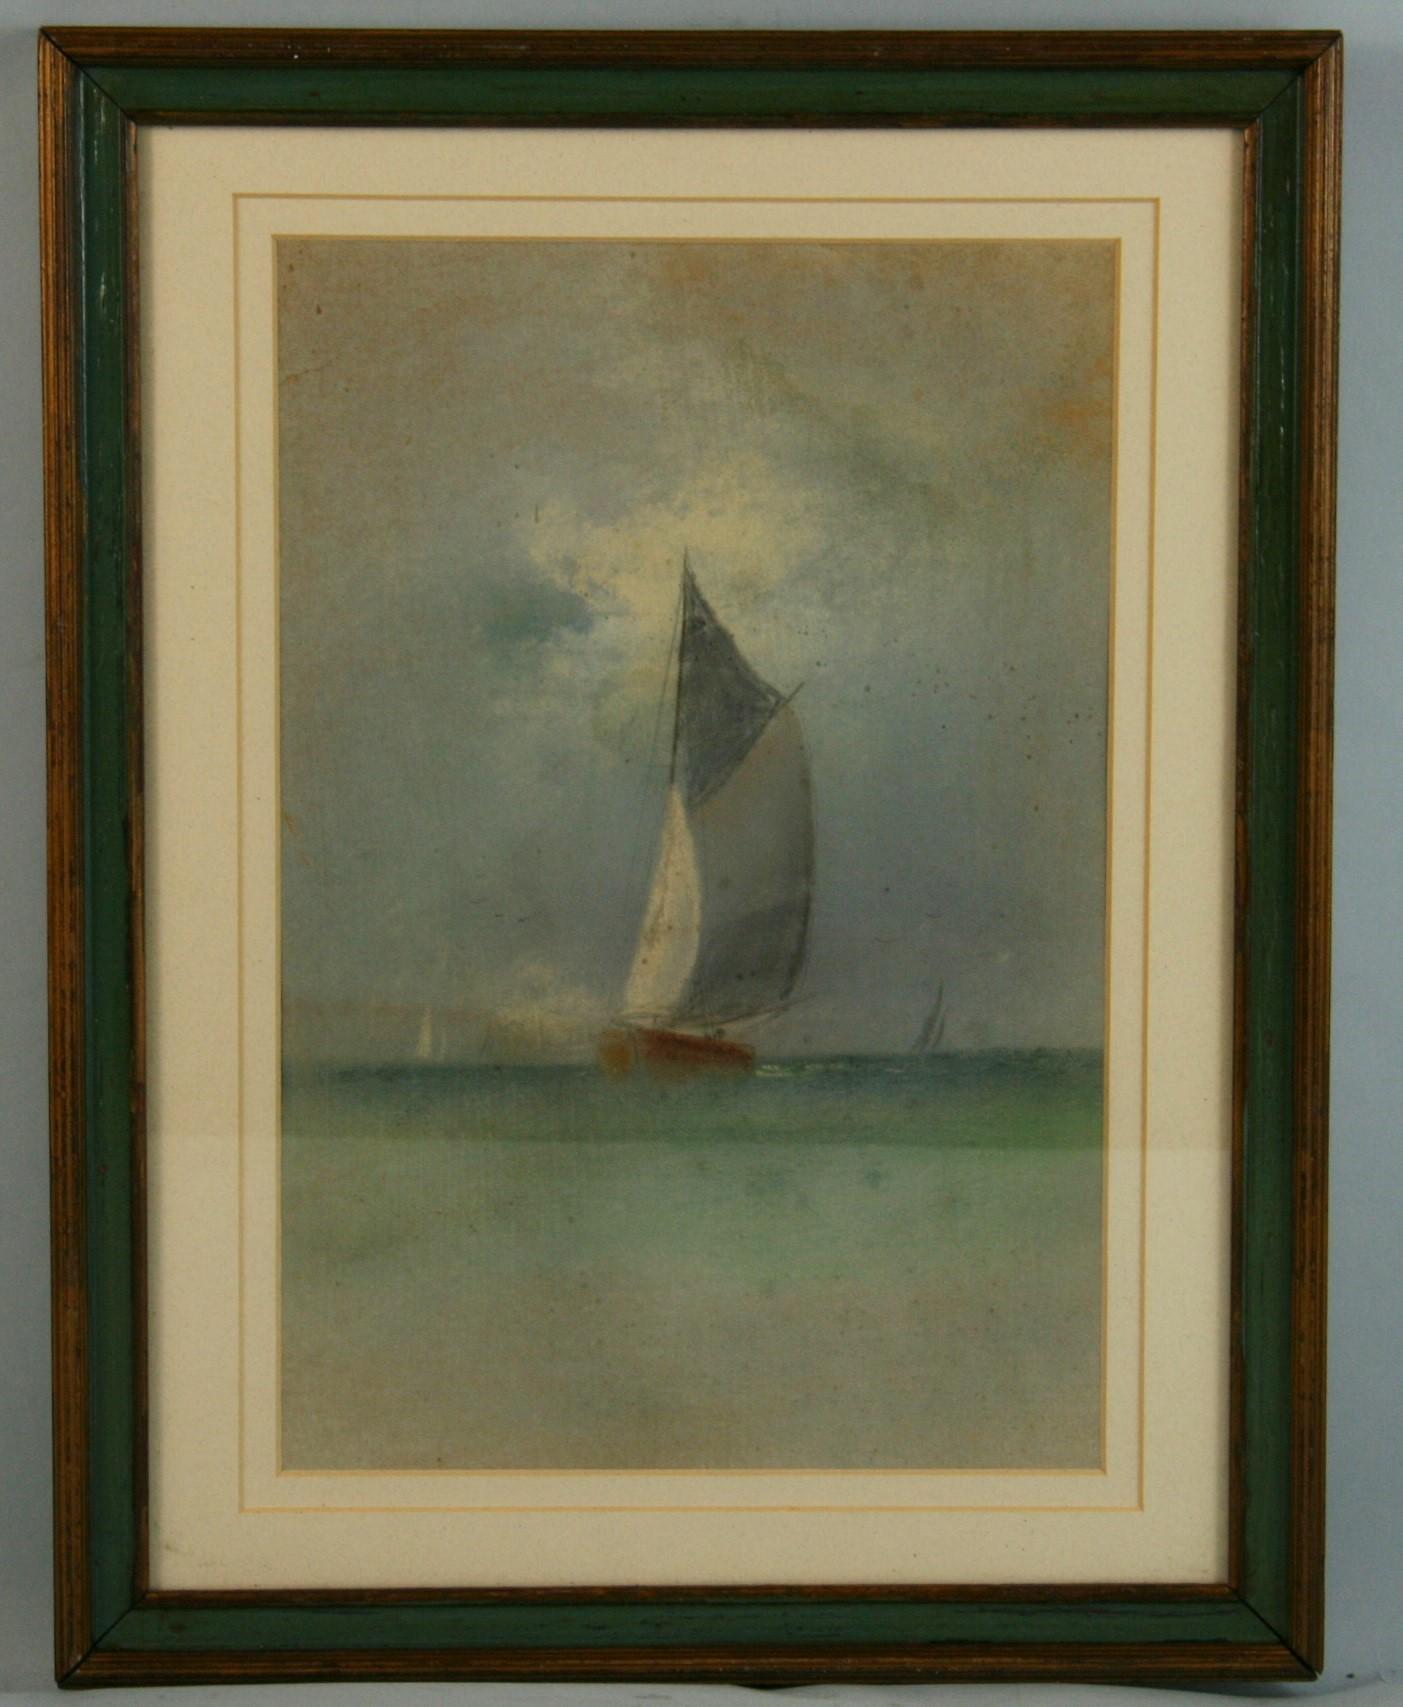 4075 Antique sailing regatta oil pastel on paper in a period frame